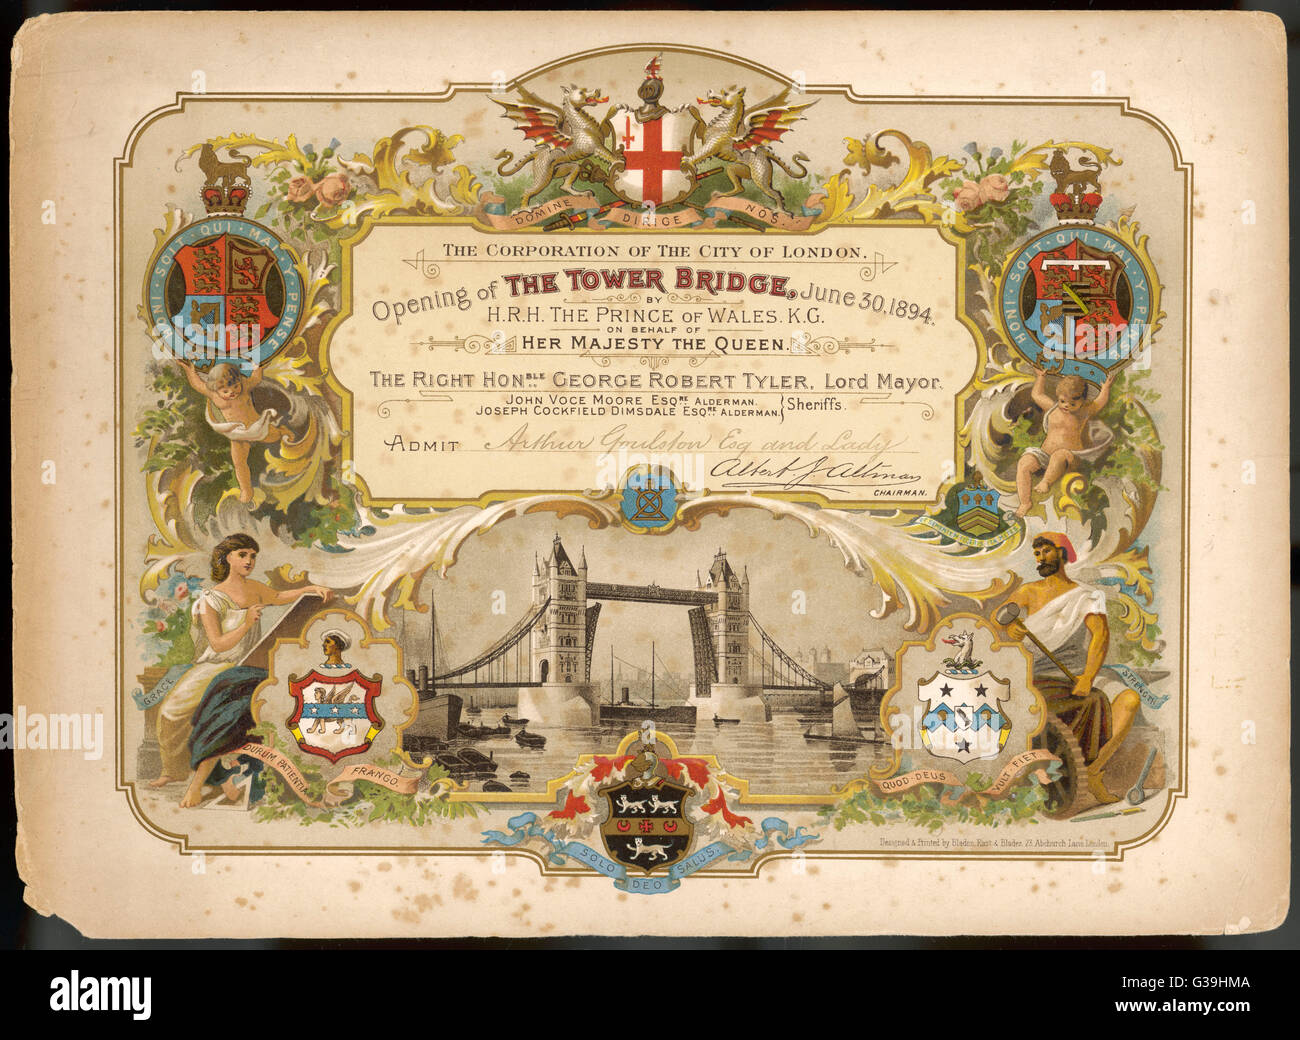 Eine Einladung zur Eröffnung der Tower Bridge von der Corporation in der City of London.      Datum: 30. Juni 1894 Stockfoto